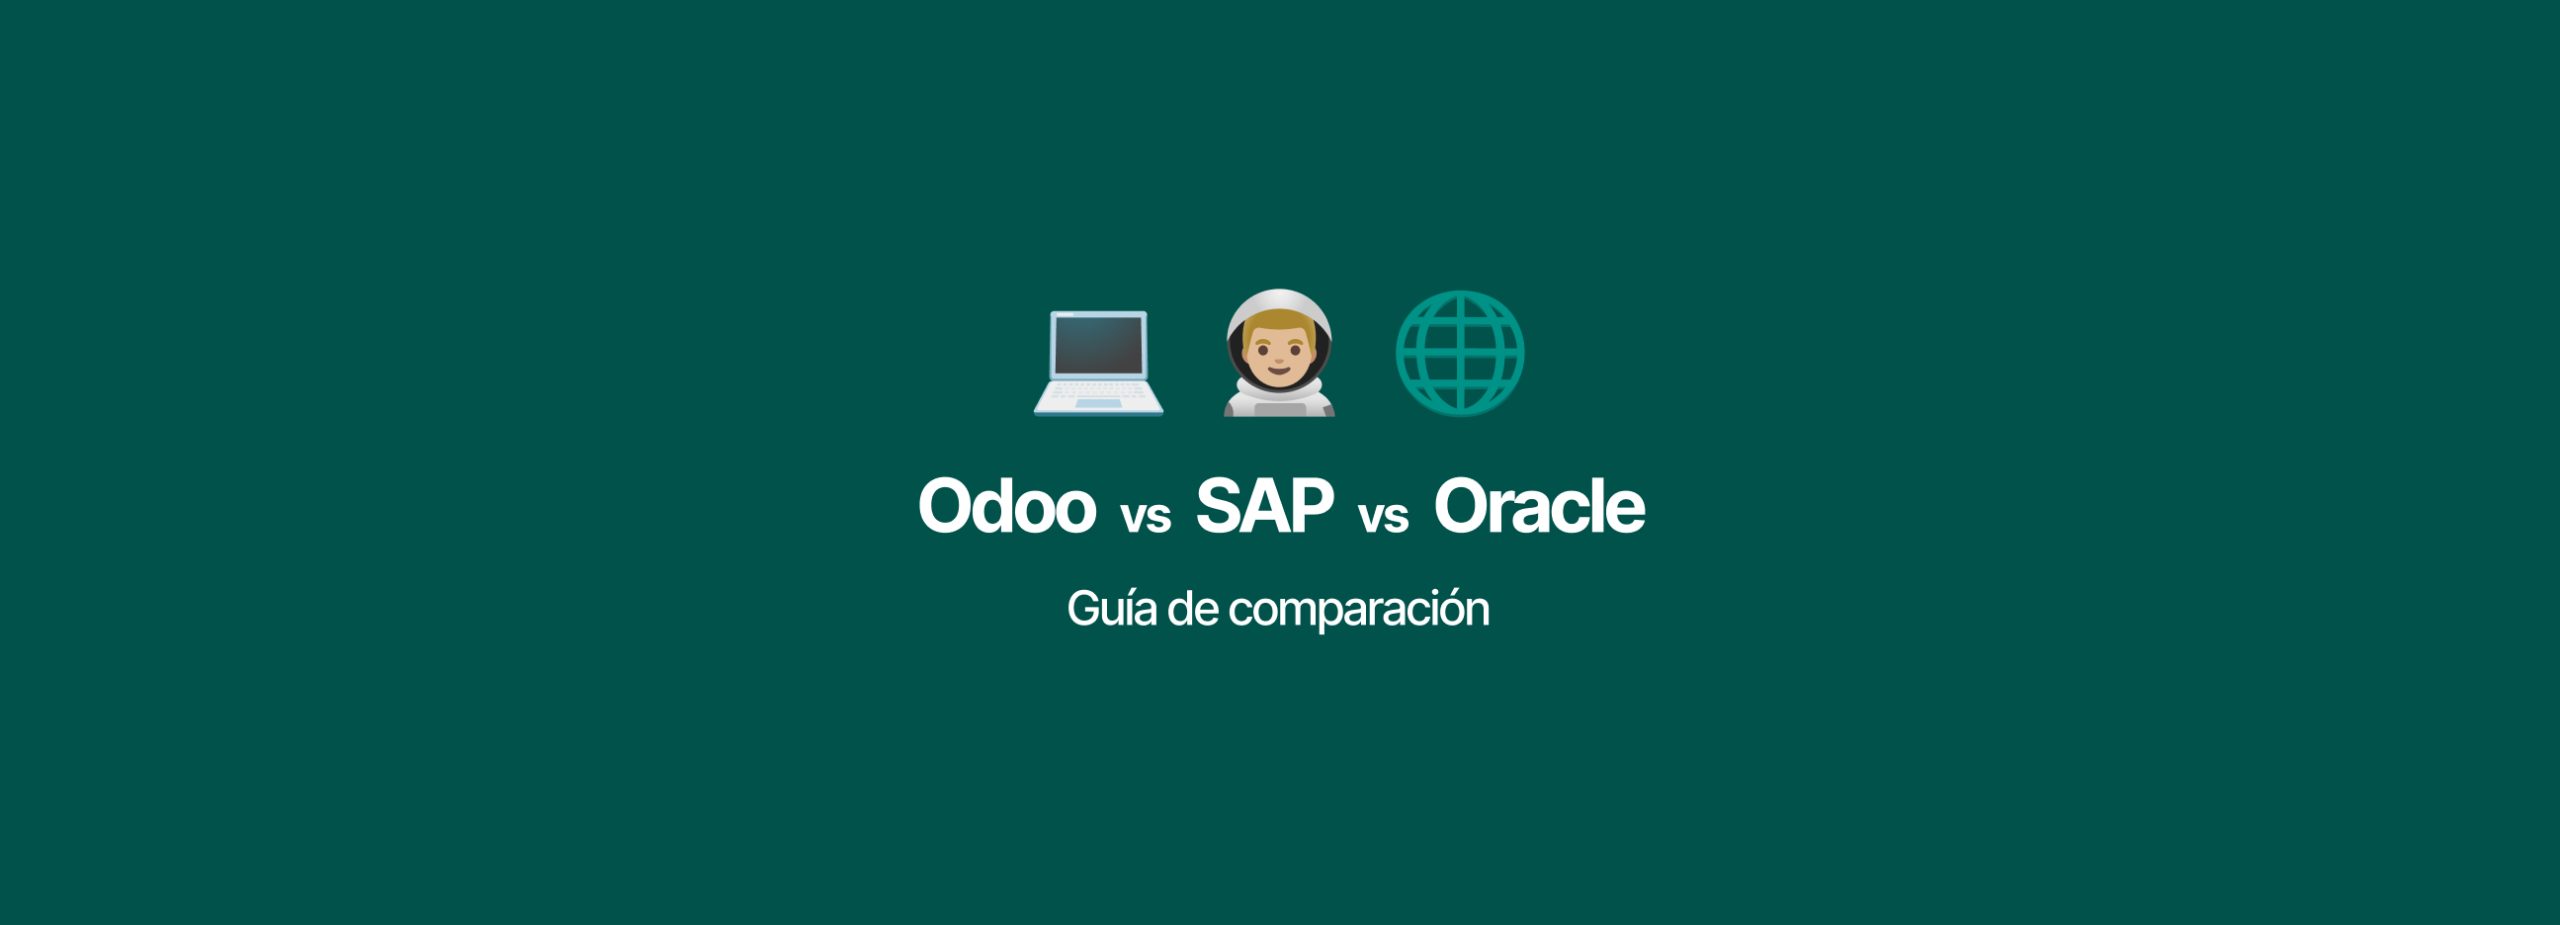 Odoo vs. SAP vs. Oracle | Guía de comparación